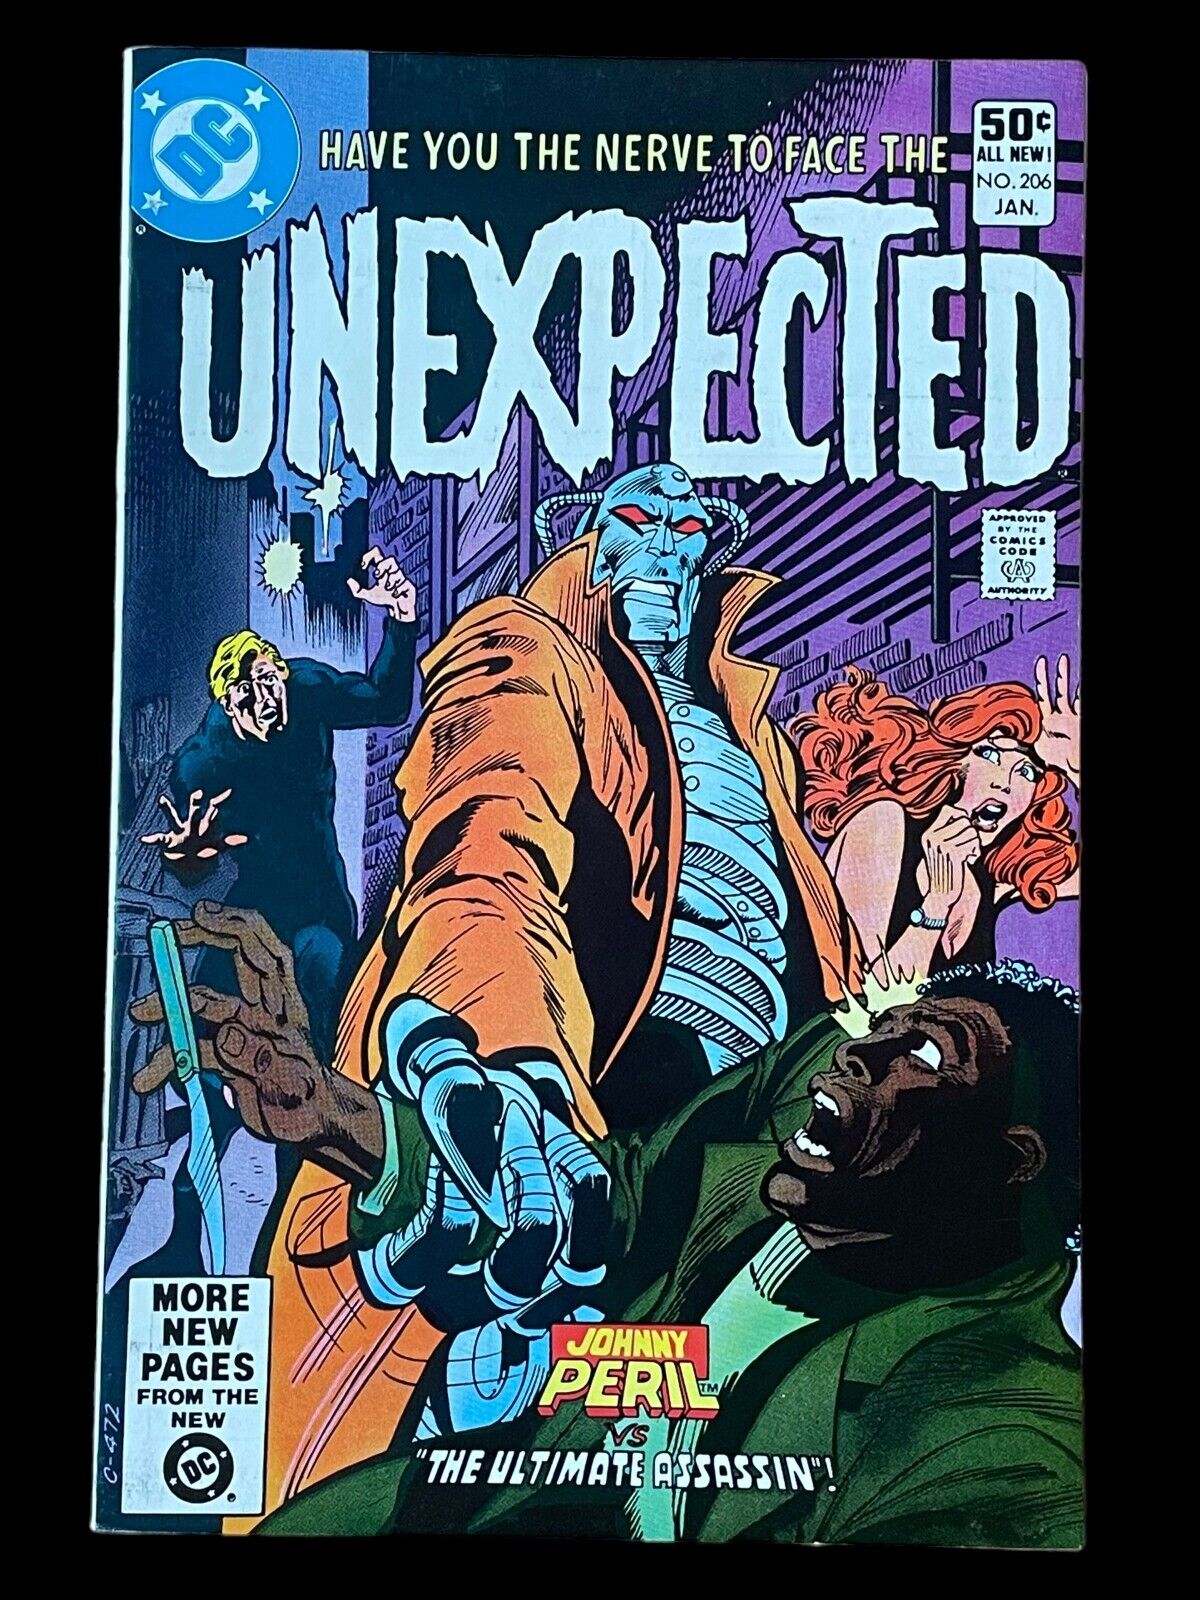 The Unexpected #206 Jan 1981 DC Comics Book